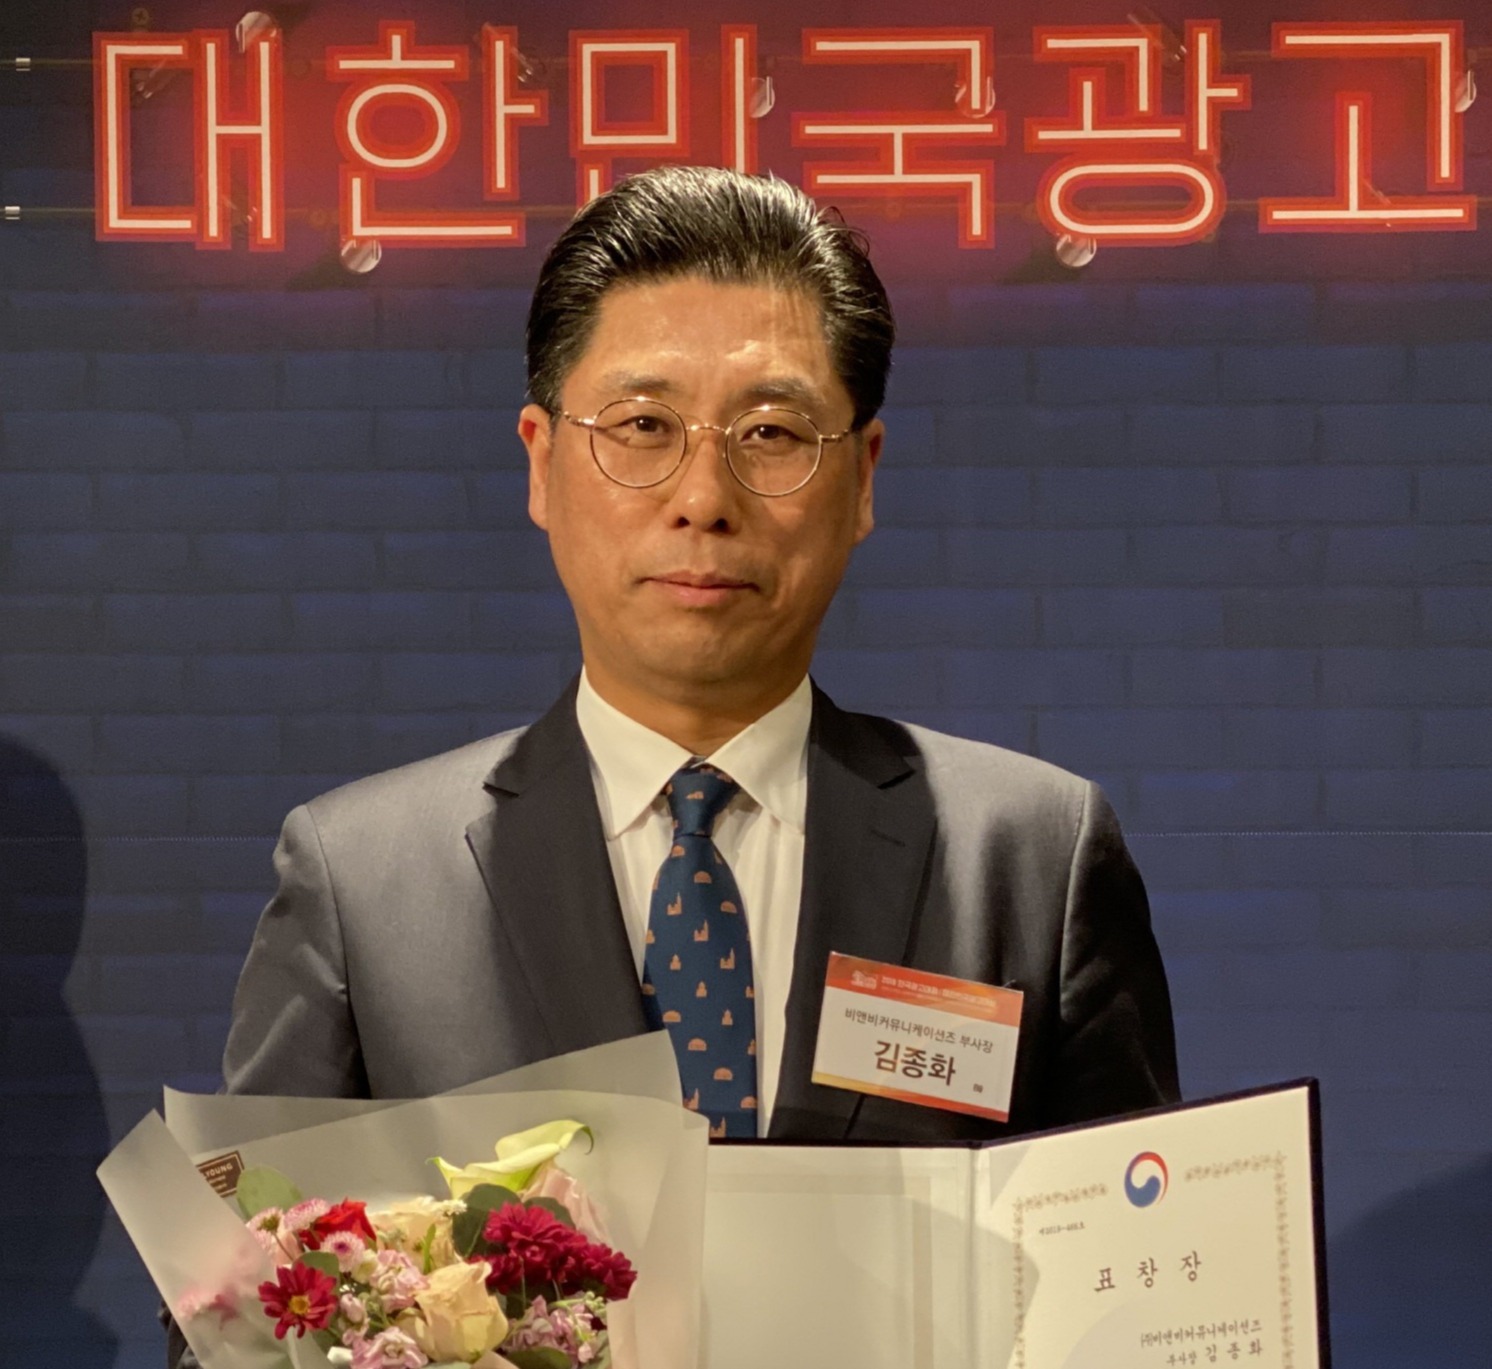 ㈜비앤비커뮤니케이션즈의 김종화 부사장이 2019 한국광고대회에서  문화체육부 장관표창을 받고 있다.